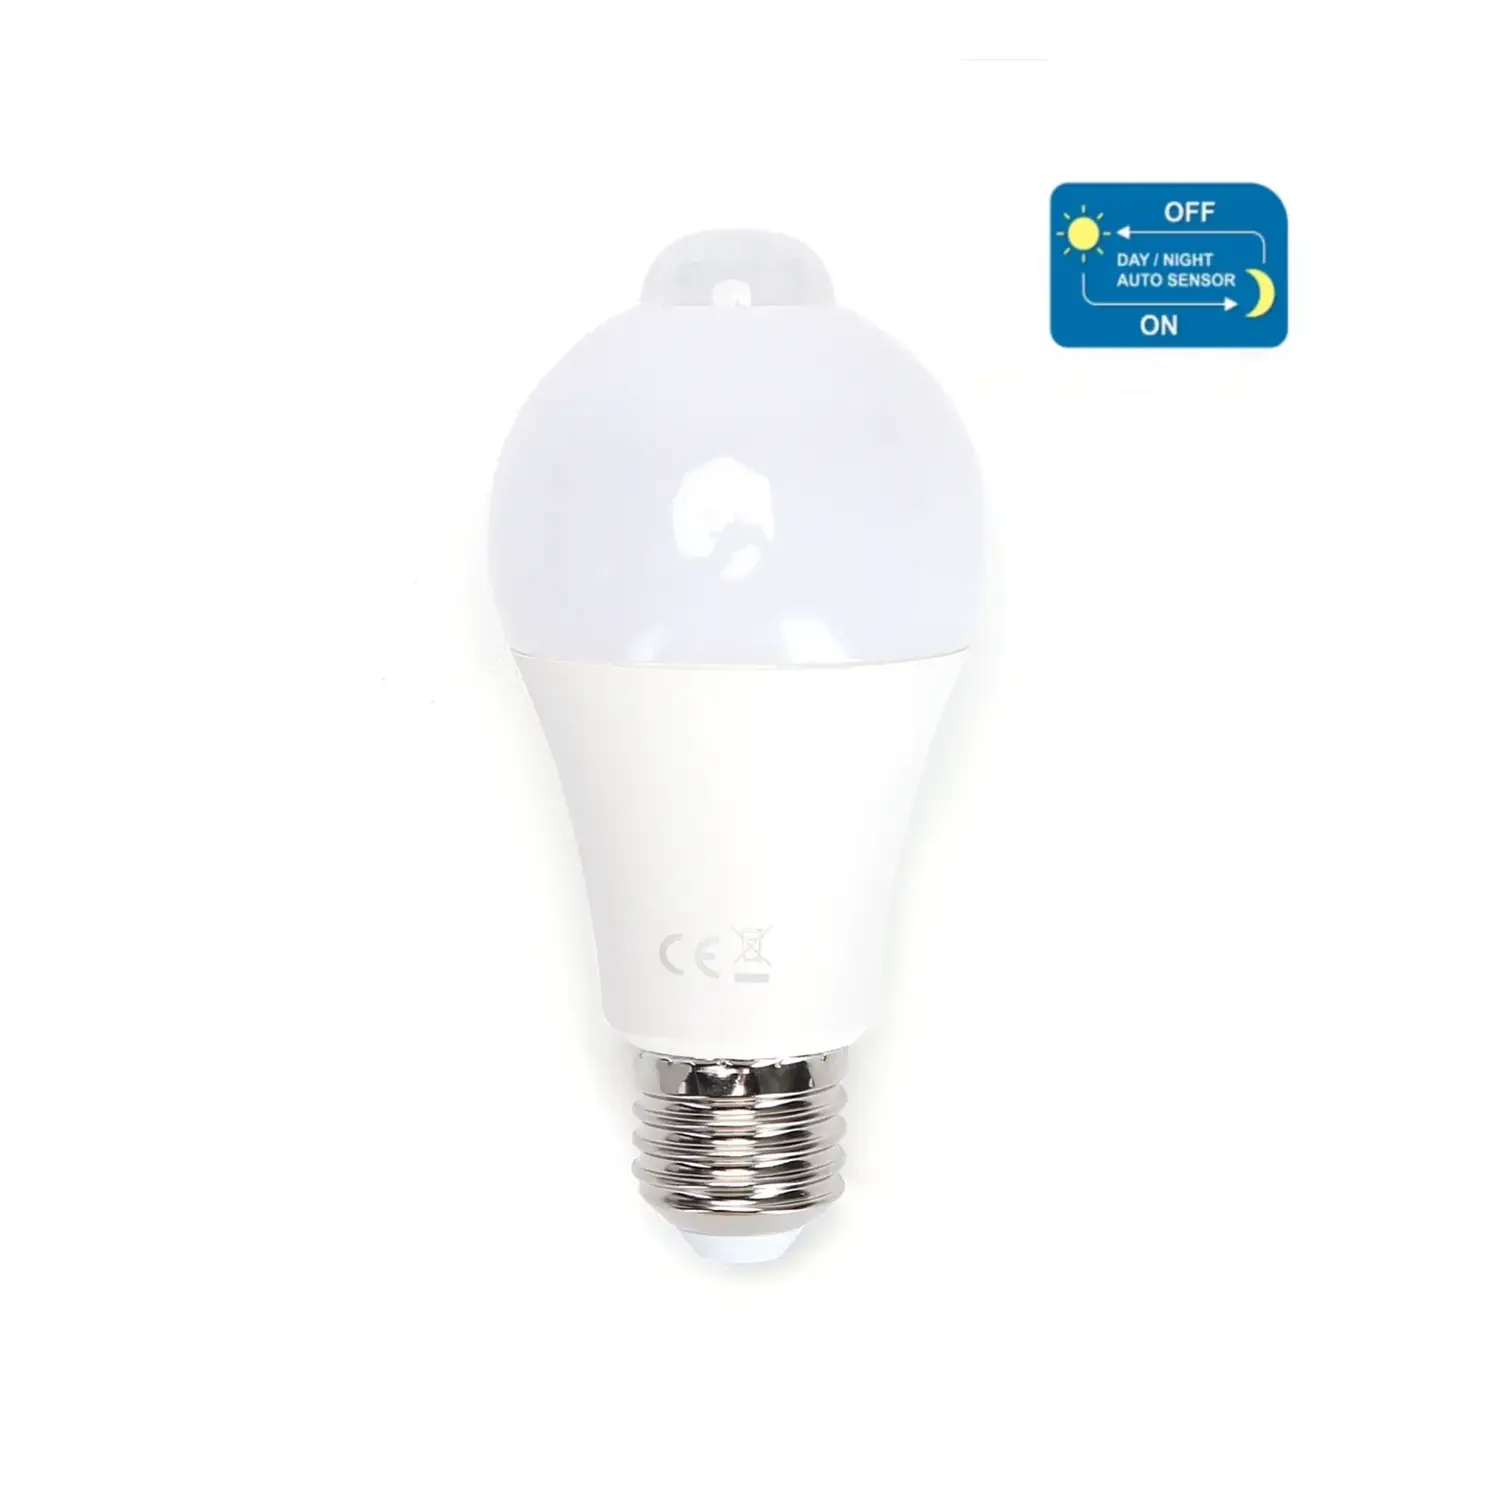 immagine del prodotto lampadina led sensore di movimento infrarossi e27 12 watt bianco freddo